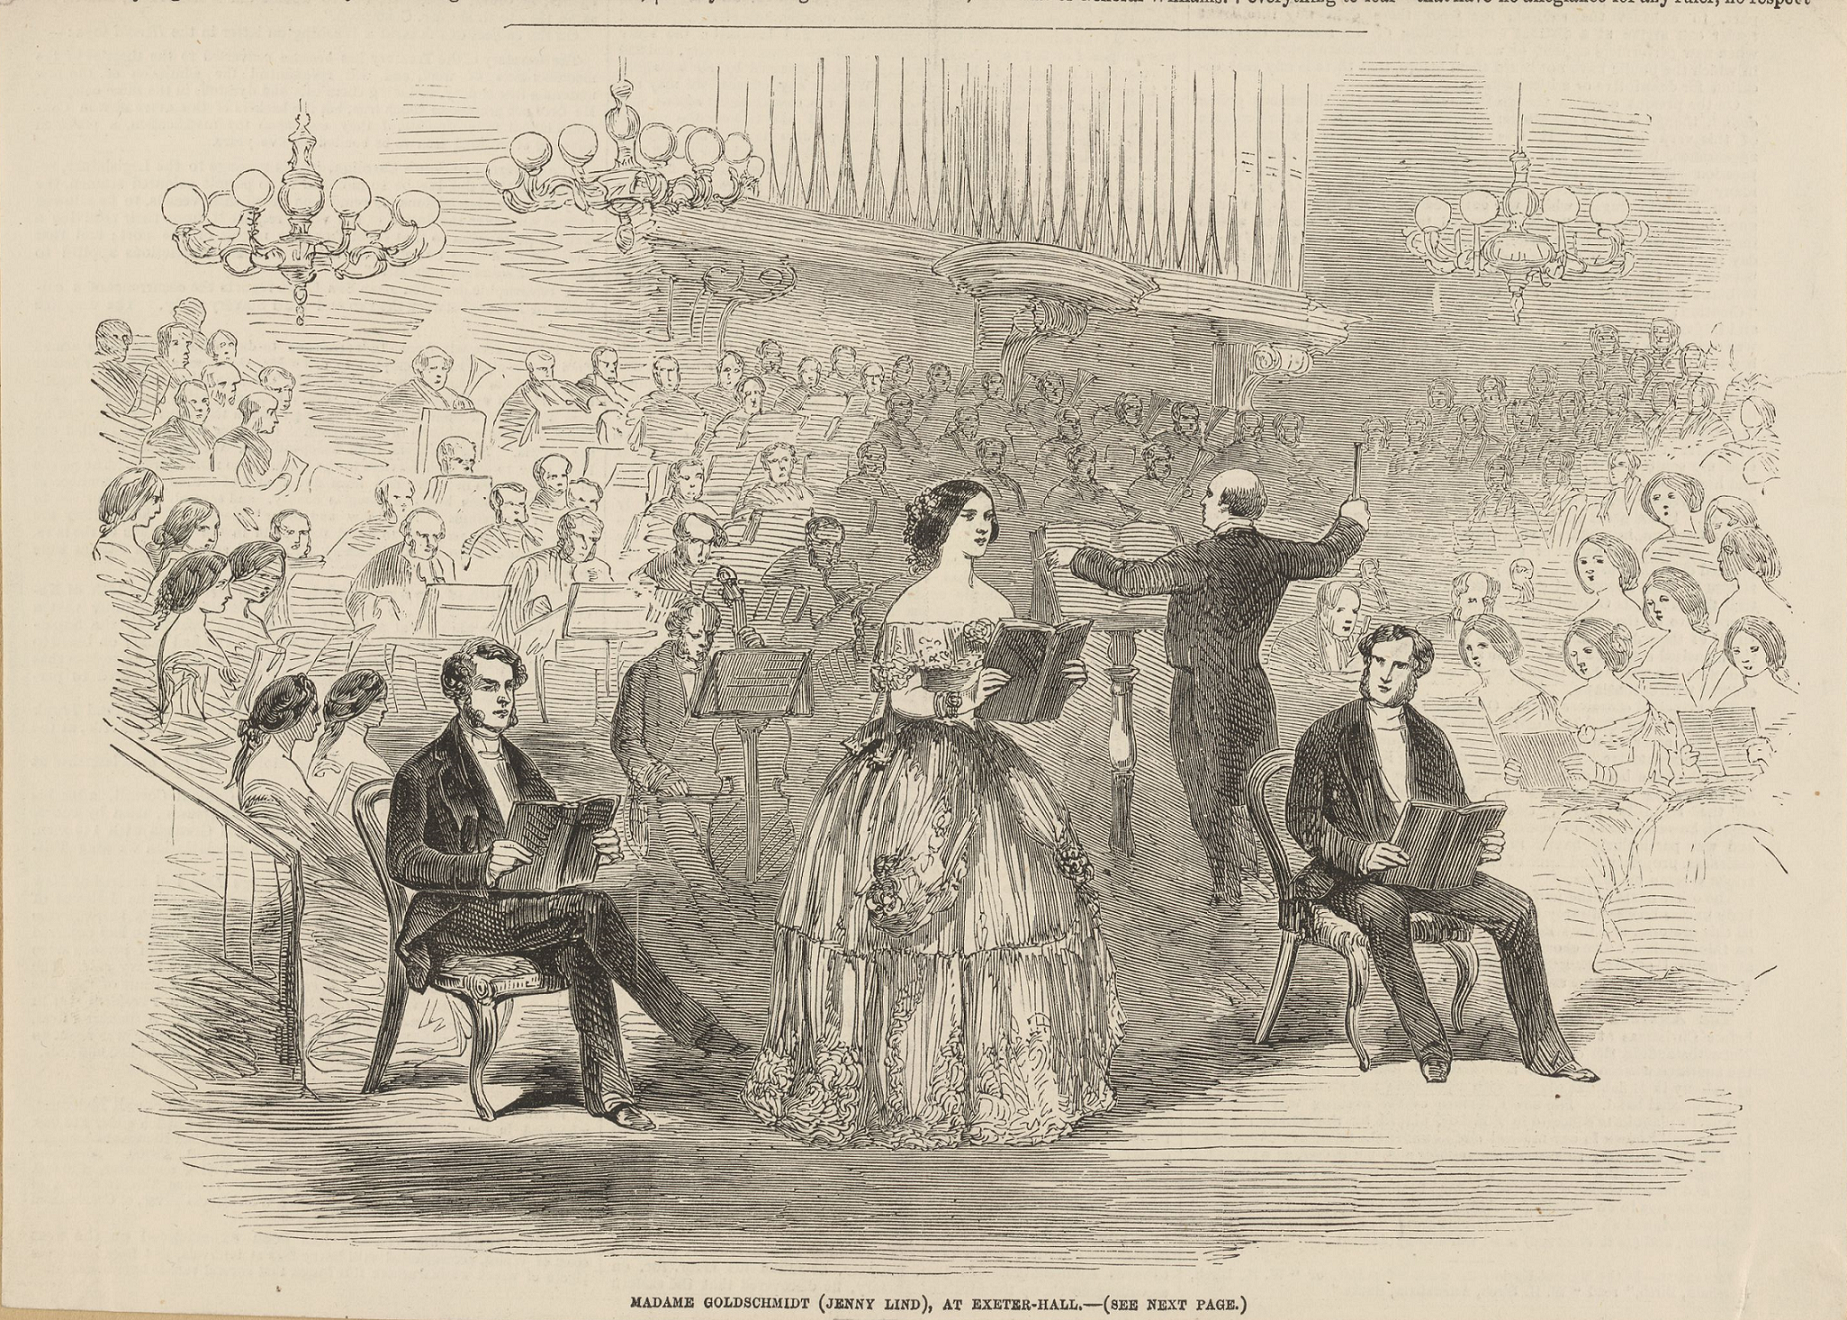 I mitten av bilden står Jenny Lind och sjunger och på var sida om henne sitter två manliga sångare. Bakom dem syns dirigenten och hela orkestern.